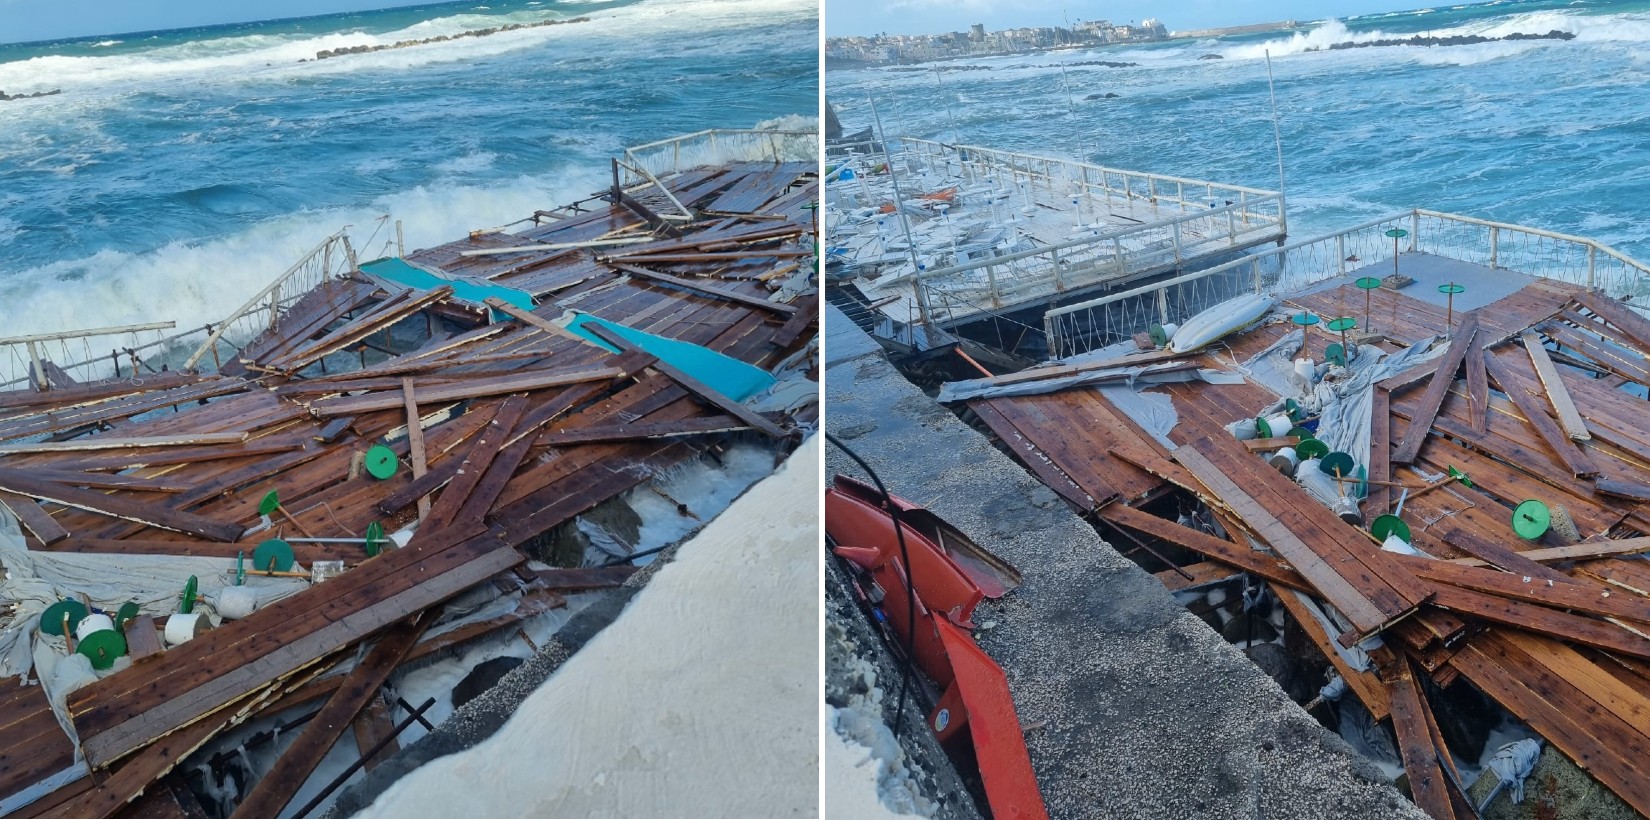 Le piattaforme dei lidi distrutti dalla mareggiata stanotte a Forio d'Ischia.